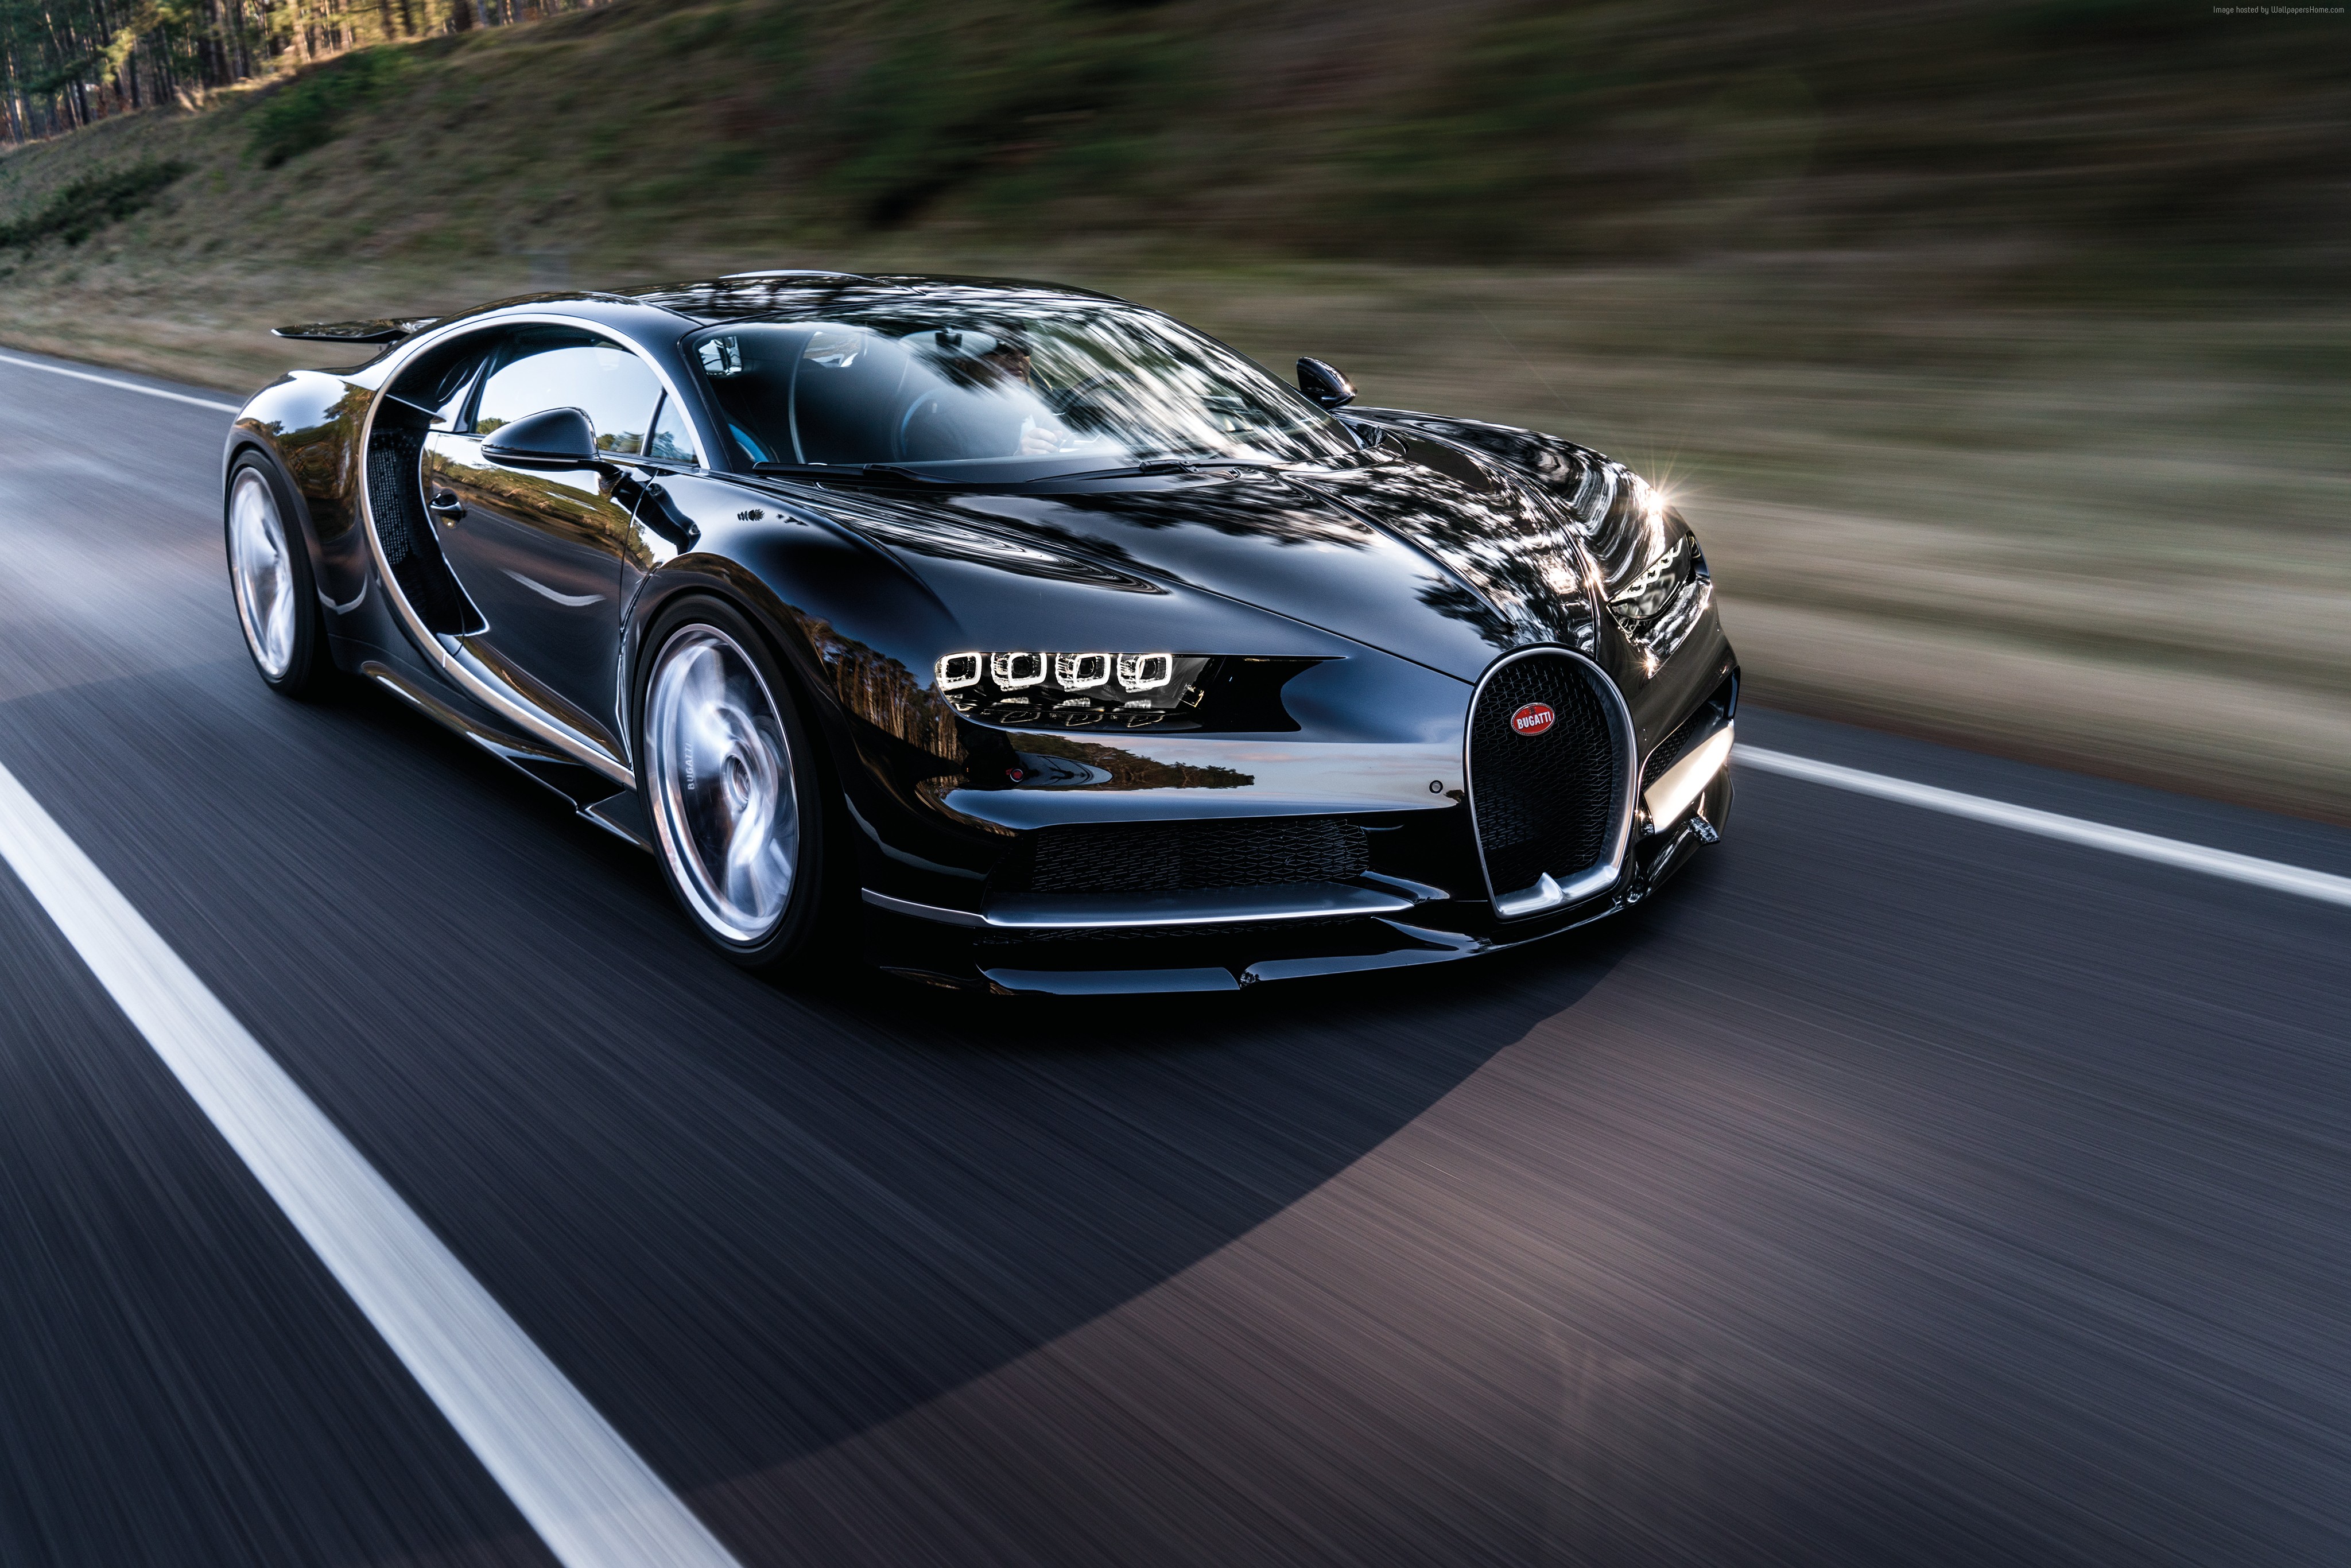 Wallpaper Bugatti Chiron Geneva Auto Show Hypercar